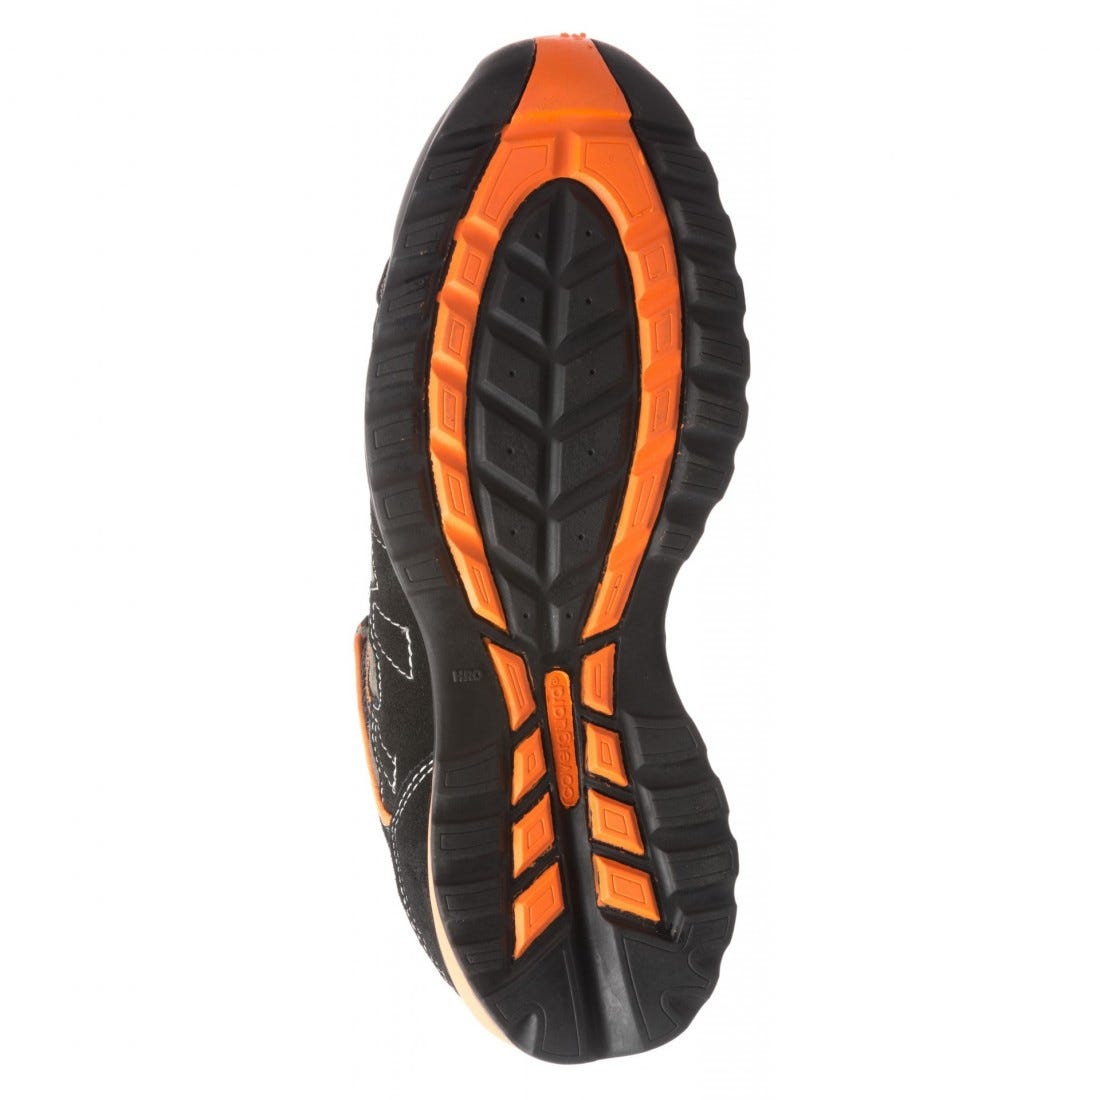 Chaussures de sécurité HELVITE S1P composite noir/orange - COVERGUARD - Taille 42 3